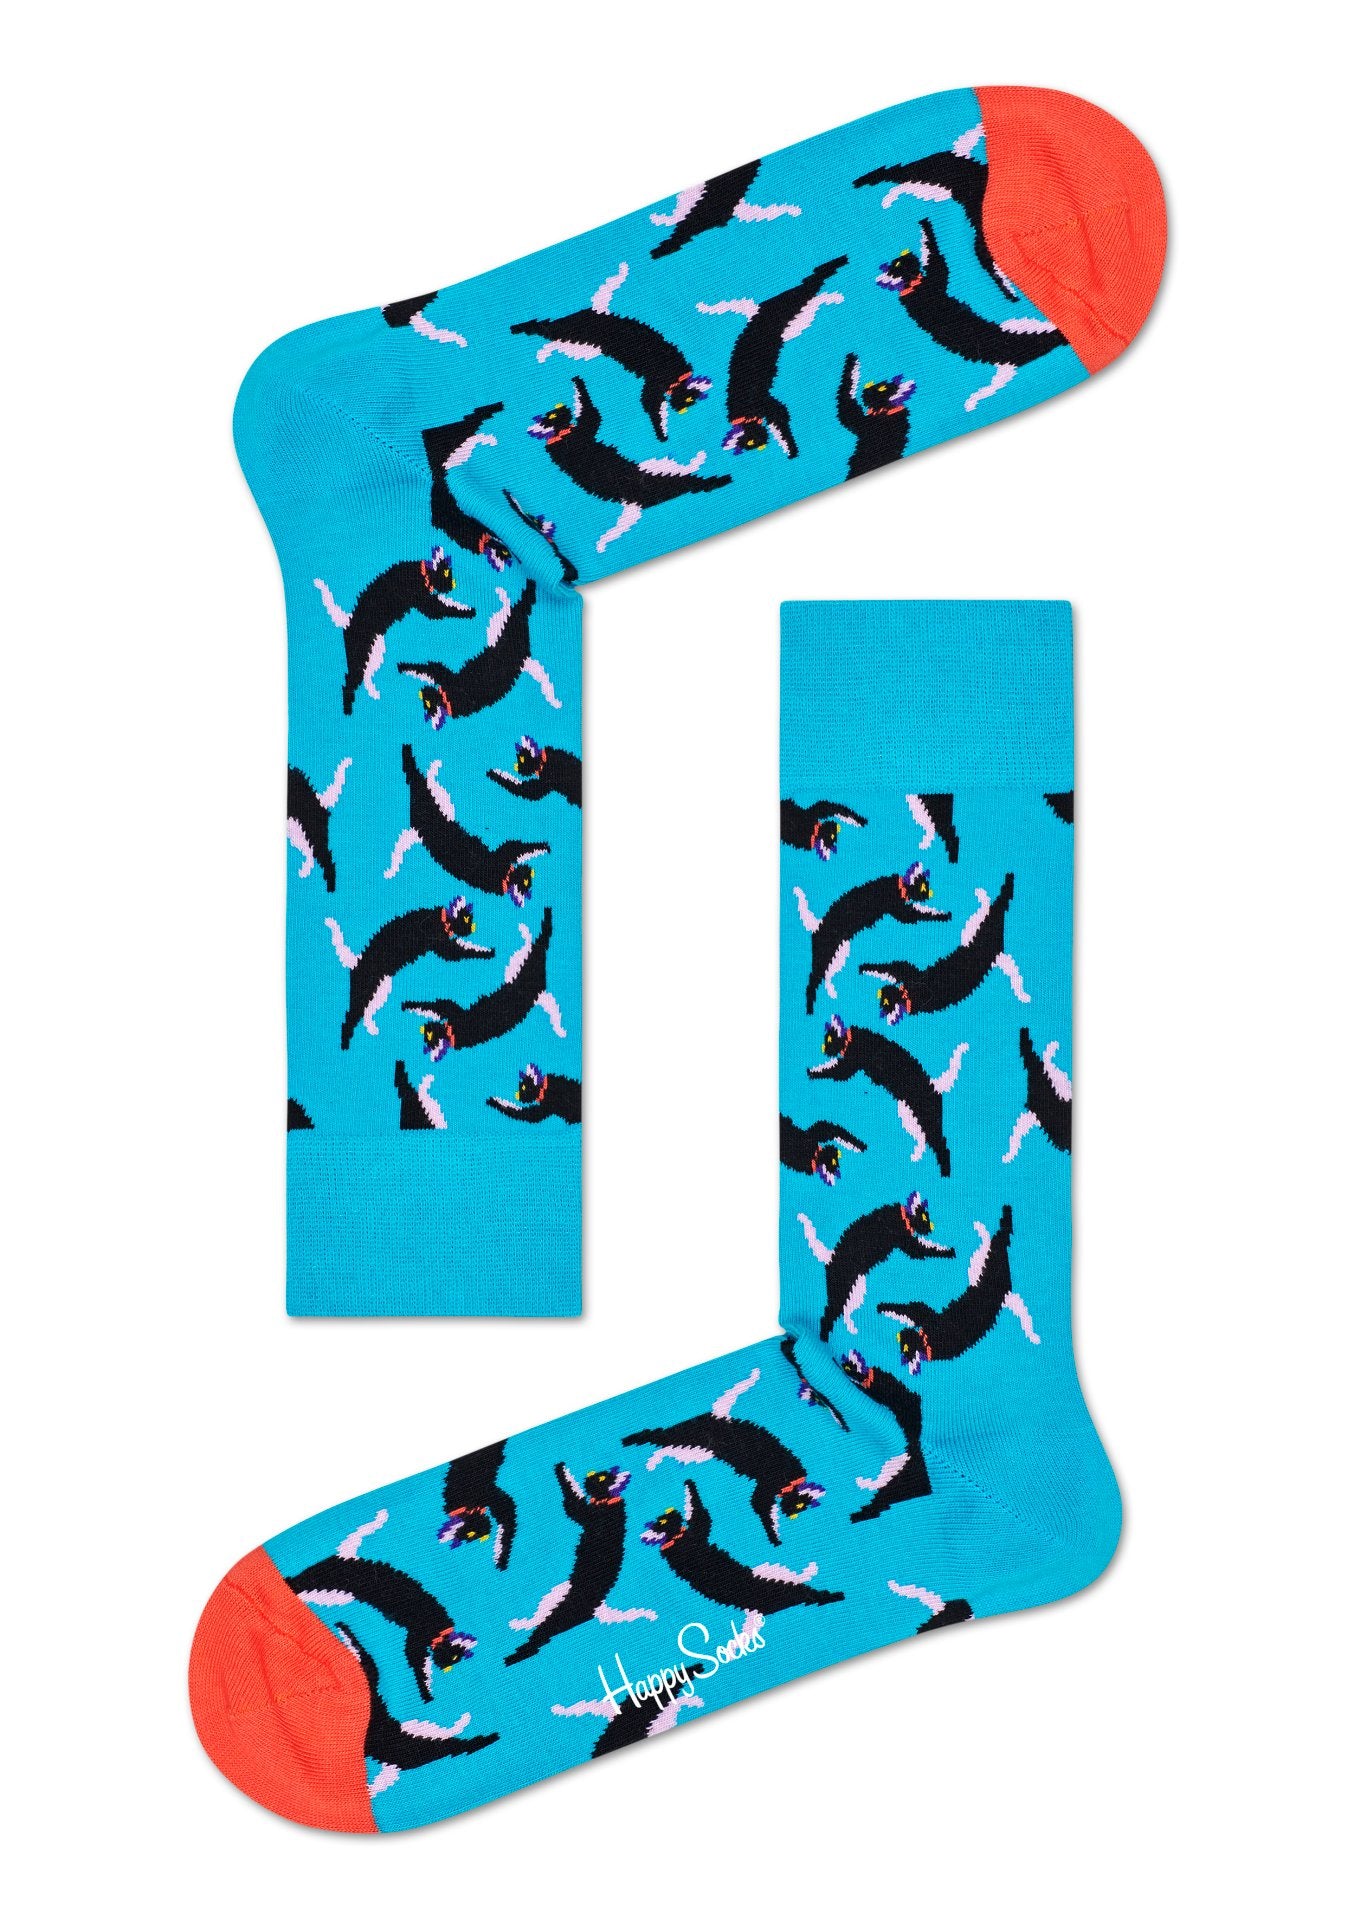 Modré ponožky Happy Socks s kočkami, vzor Cat